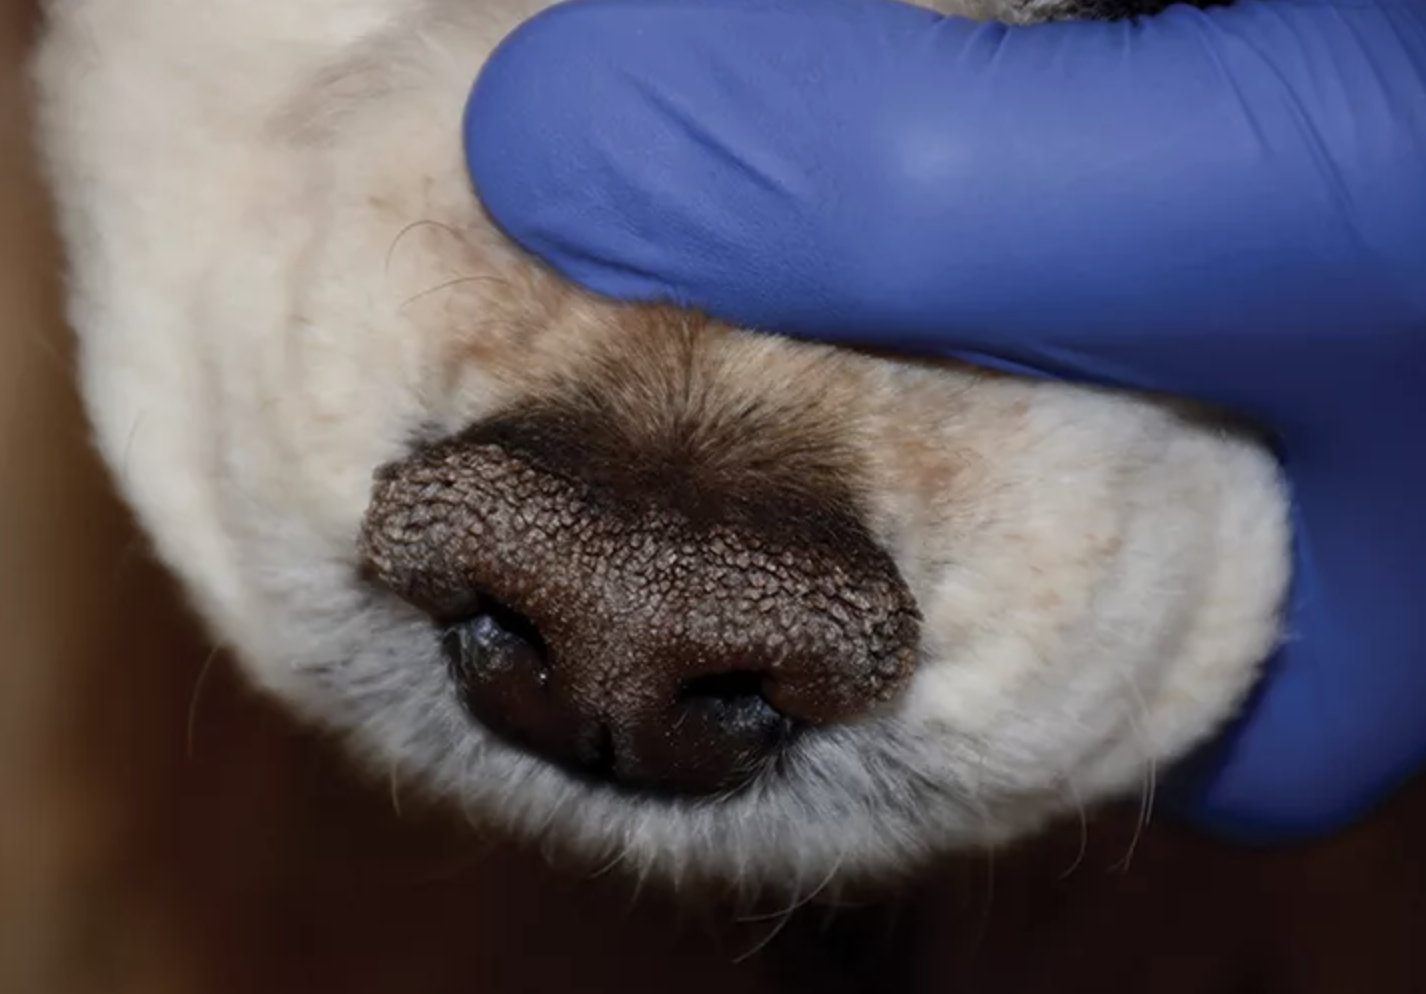 Enfermedad del plano nasal en perros, foto Hiperqueratosis nasal idiopática